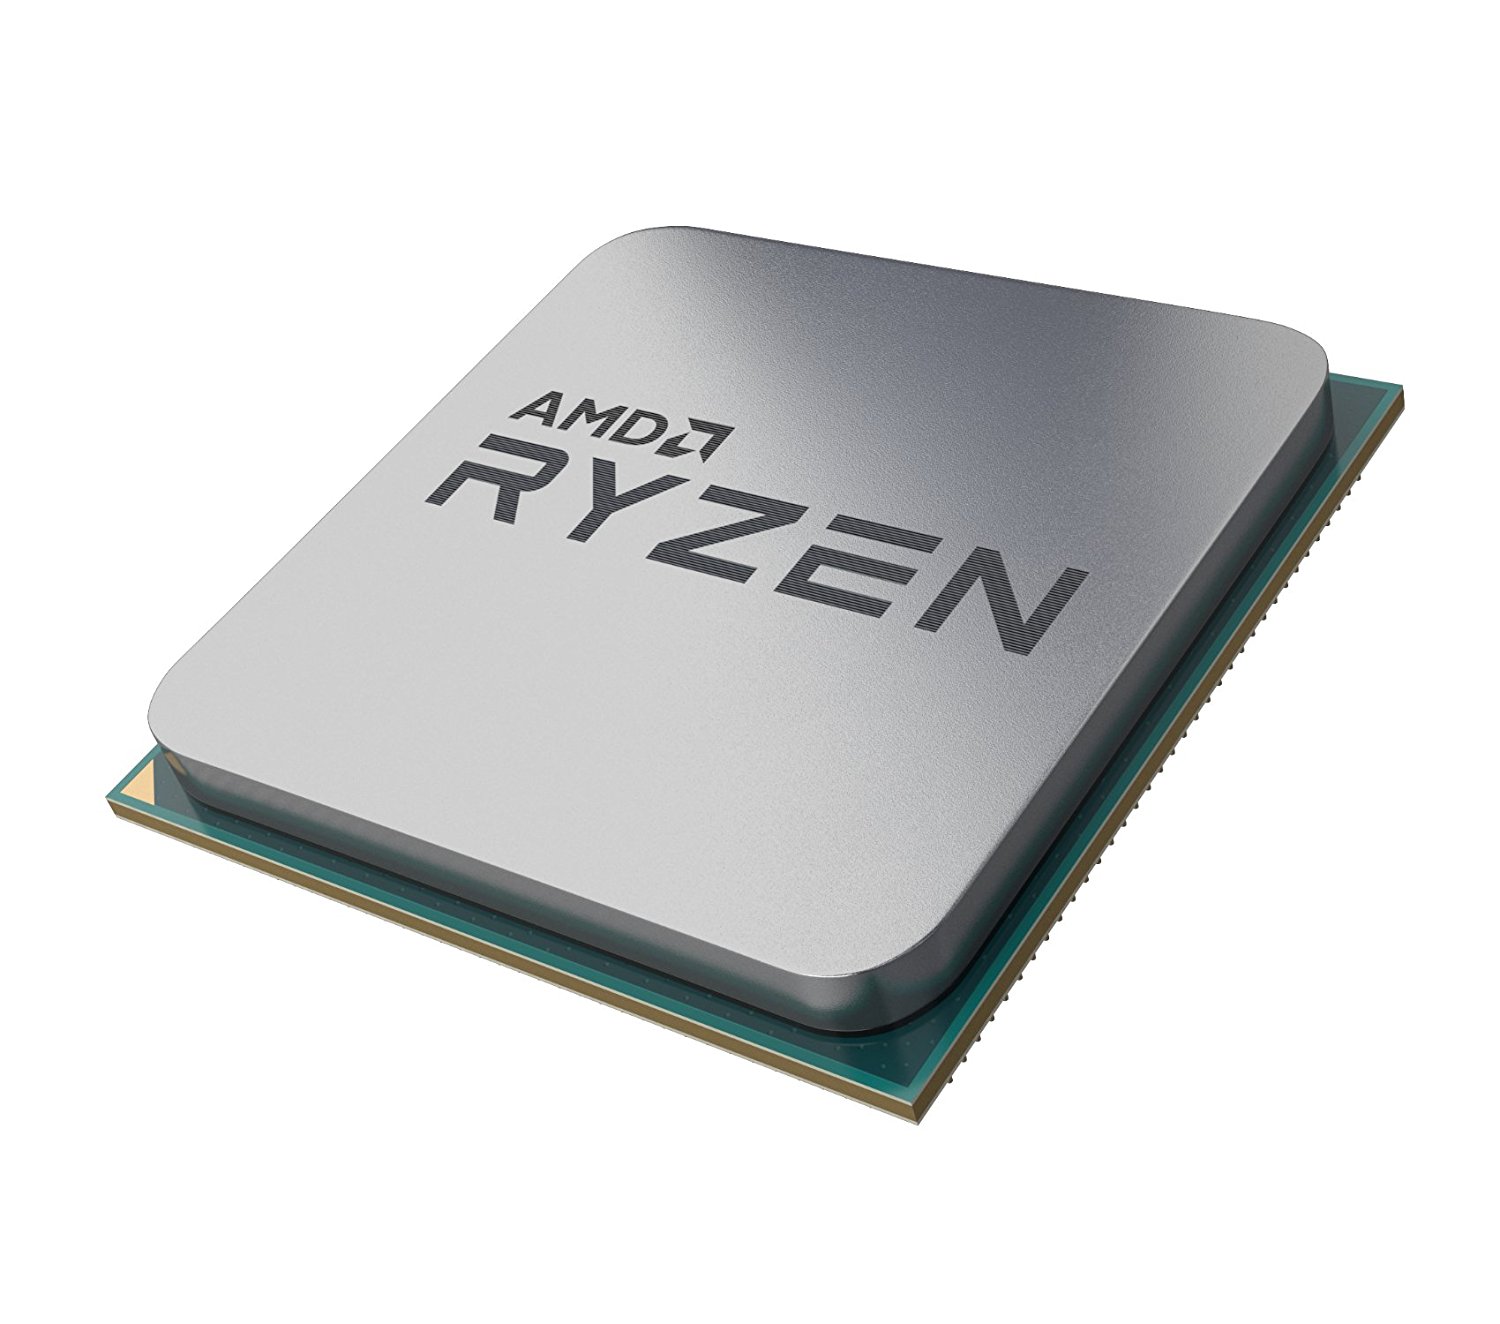 Immagine pubblicata in relazione al seguente contenuto: AMD lancia le APU Raven Ridge per desktop Ryzen 5 2400G e Ryzen 3 2200G | Nome immagine: news27852_Ryzen-5-2400G-Ryzen-3-2200G_6.jpg